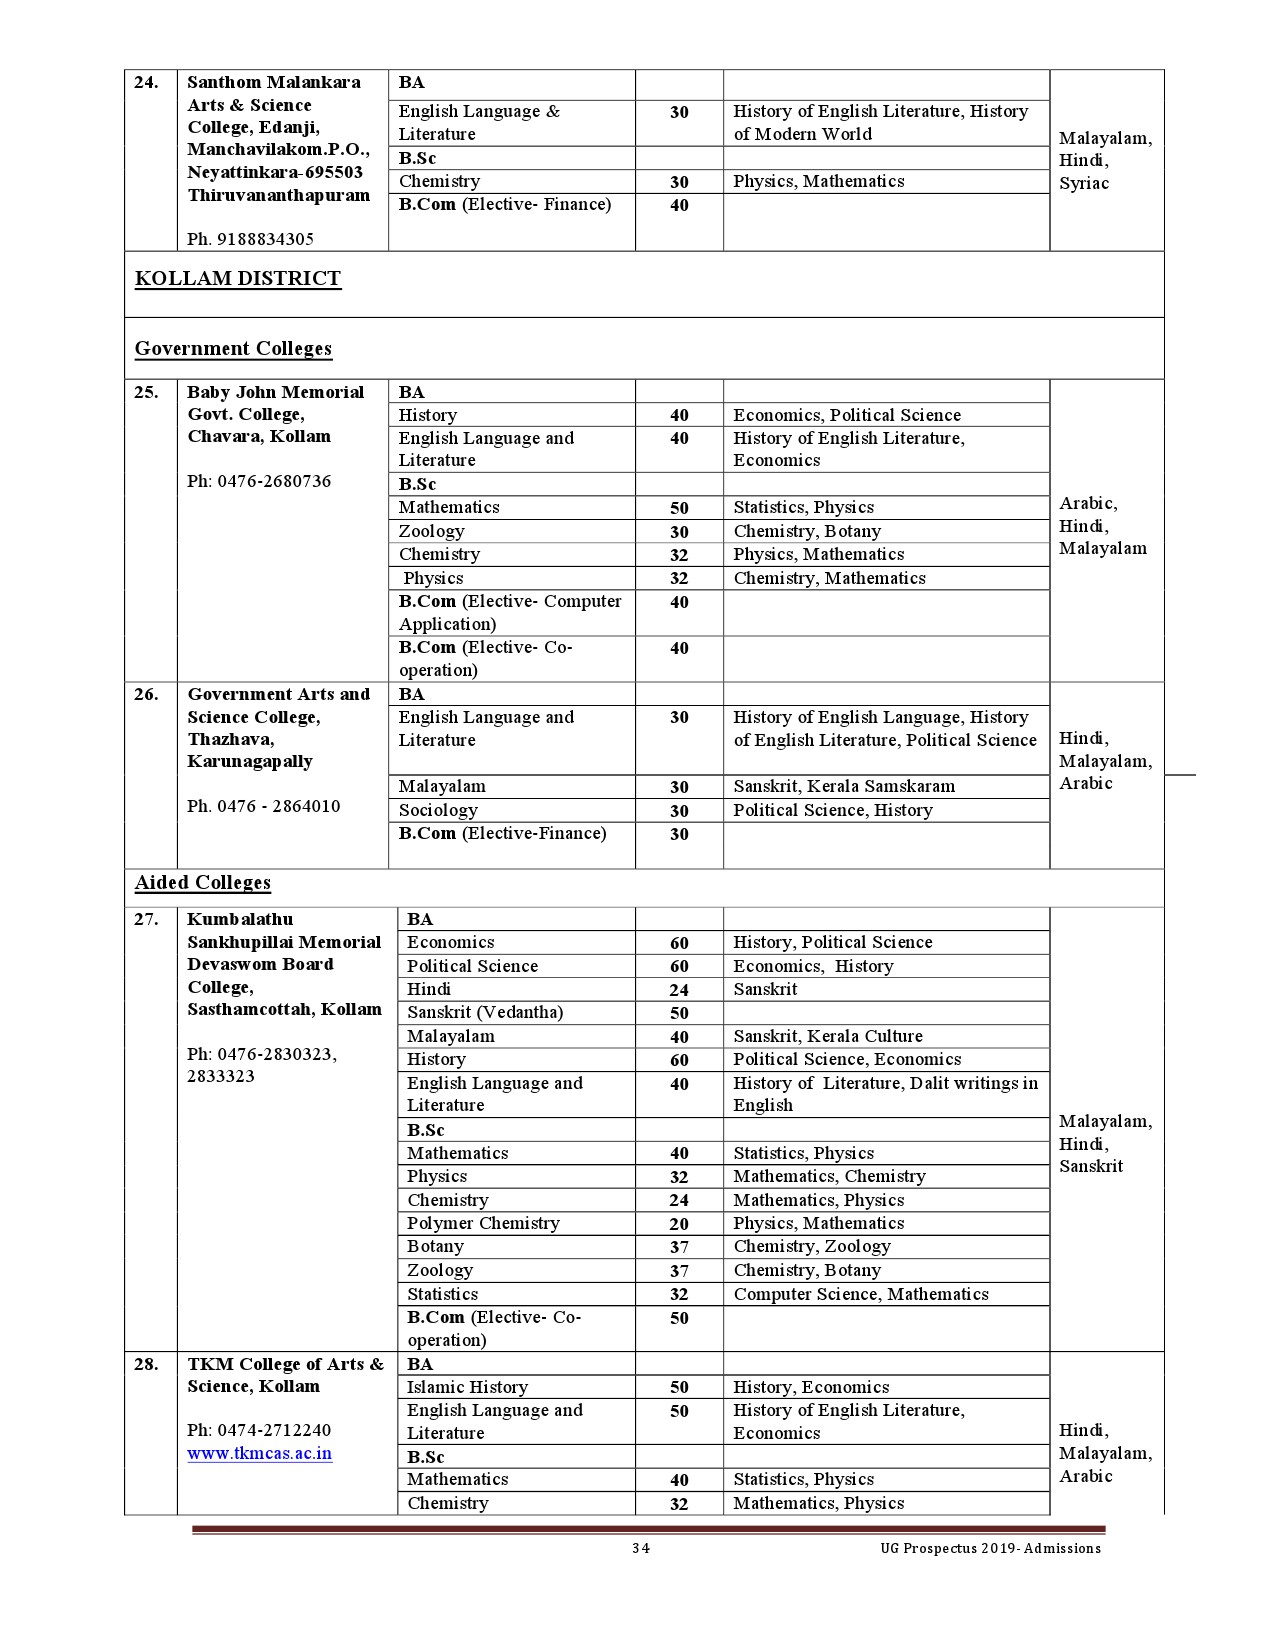 Kerala University UG Admission Prospectus 2019 - Notification Image 34